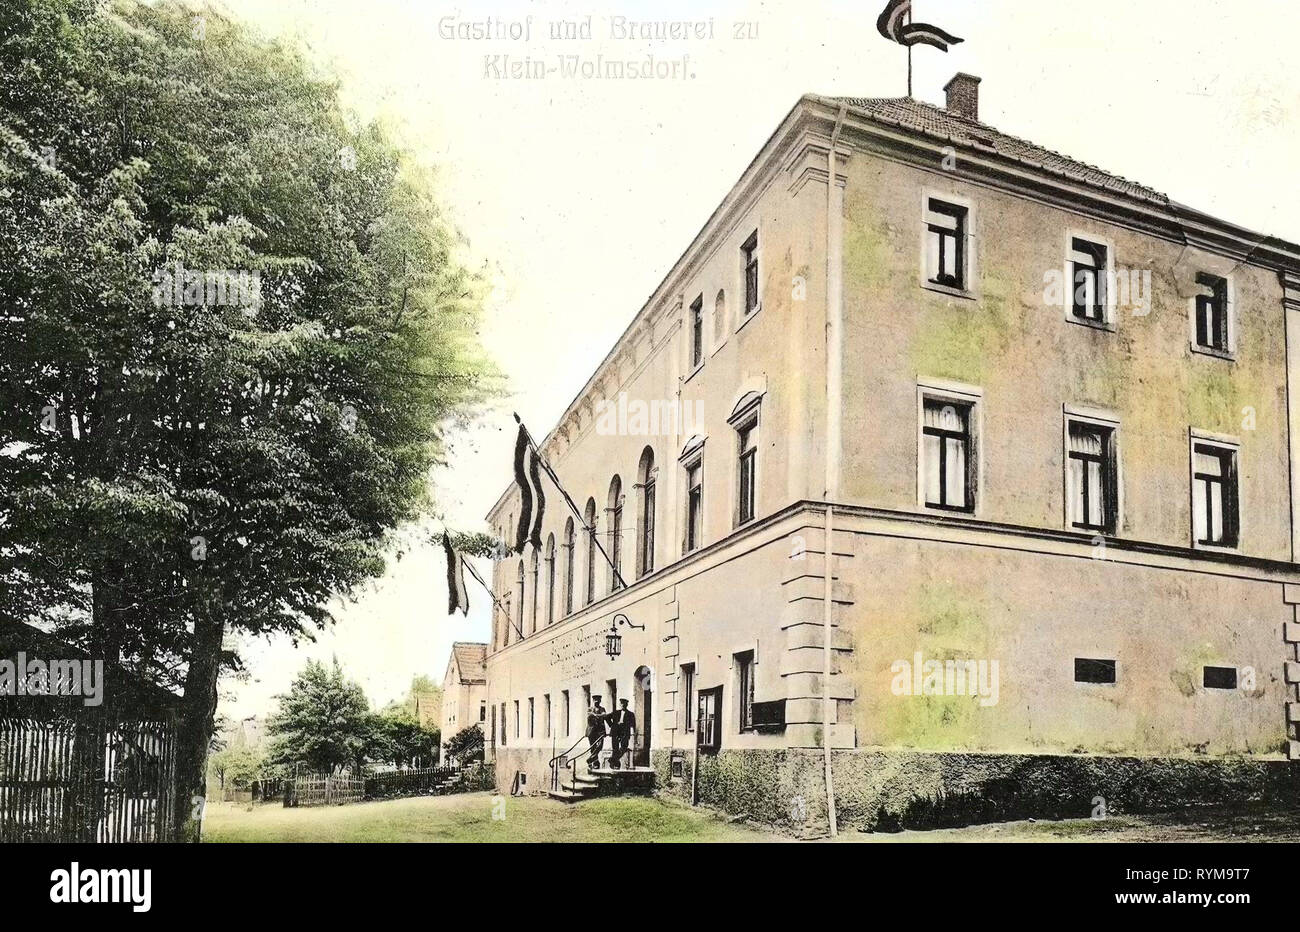 Restaurants in Landkreis Bautzen, Breweries in Saxony, Kleinwolmsdorf, 1905, Landkreis Bautzen, Klein, Wolmsdorf, Gasthof und Brauerei, Germany Stock Photo